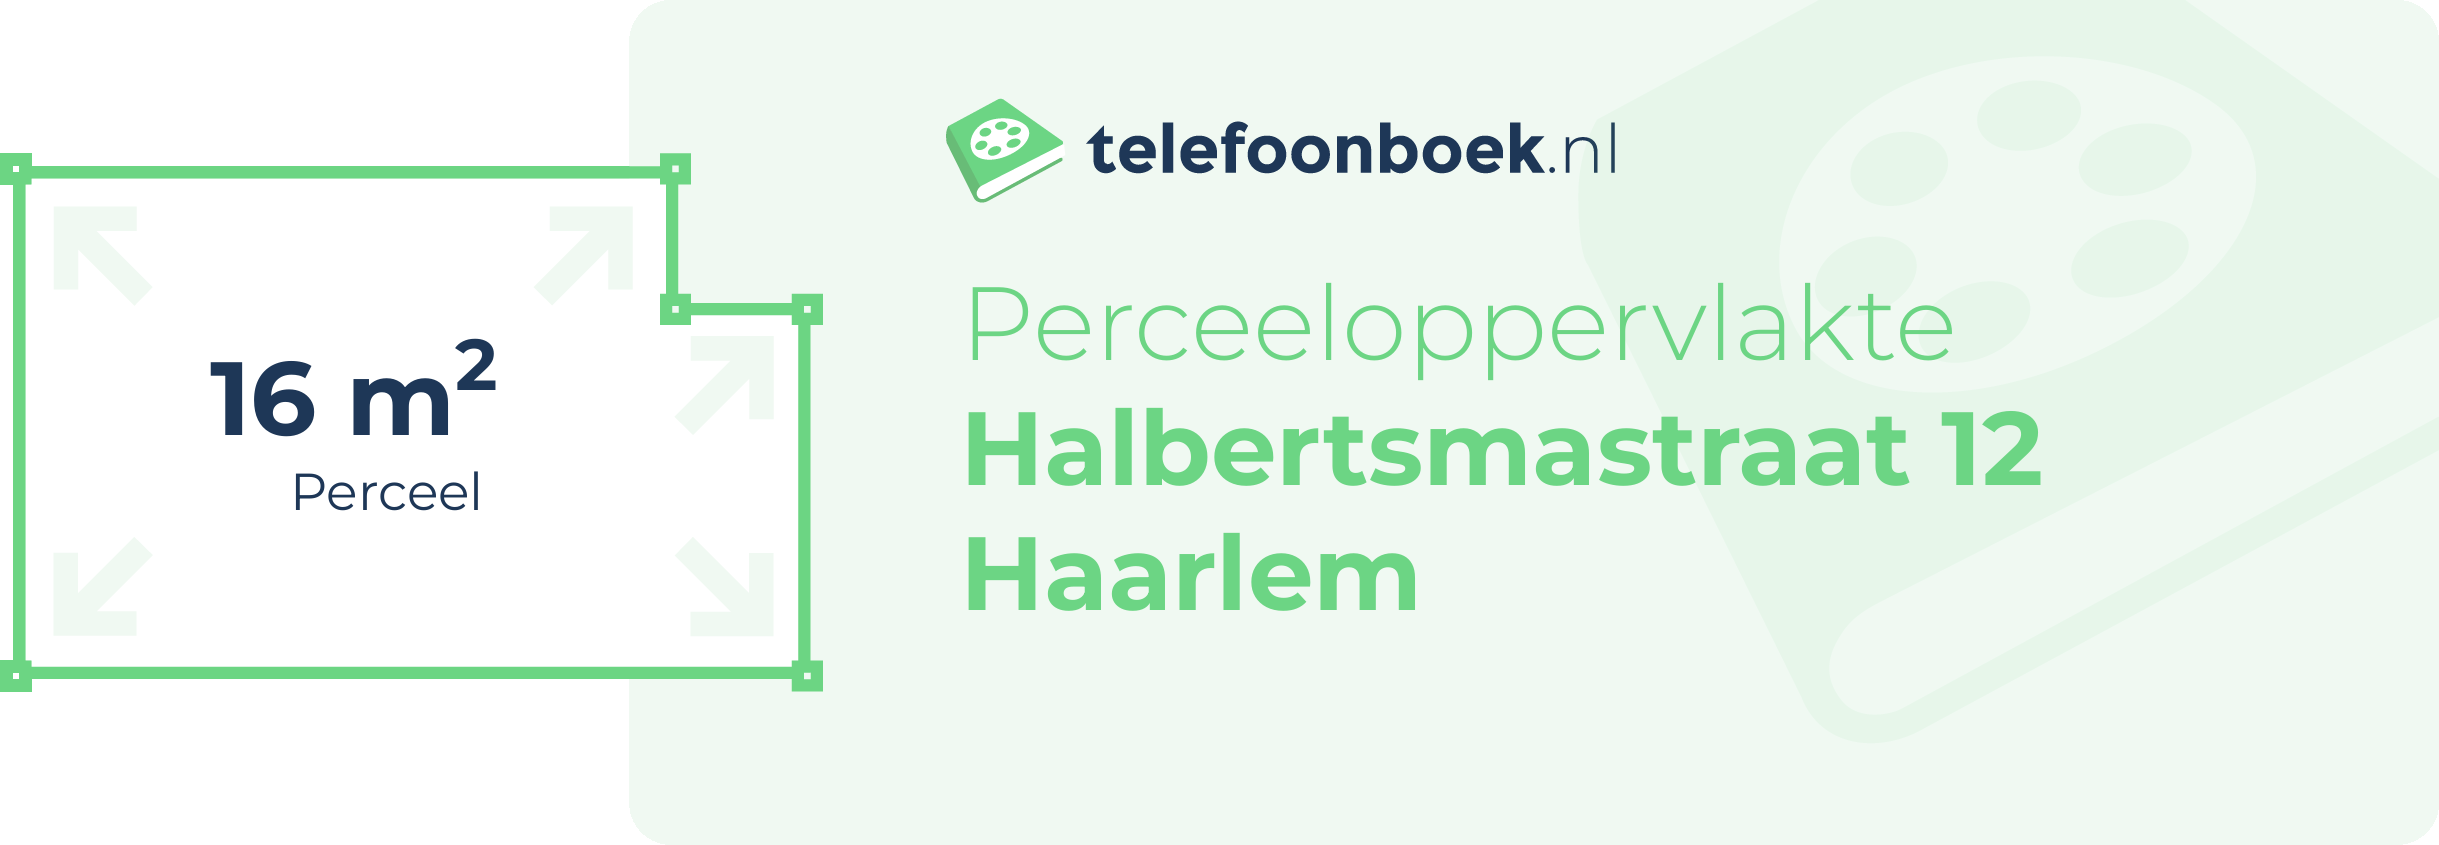 Perceeloppervlakte Halbertsmastraat 12 Haarlem